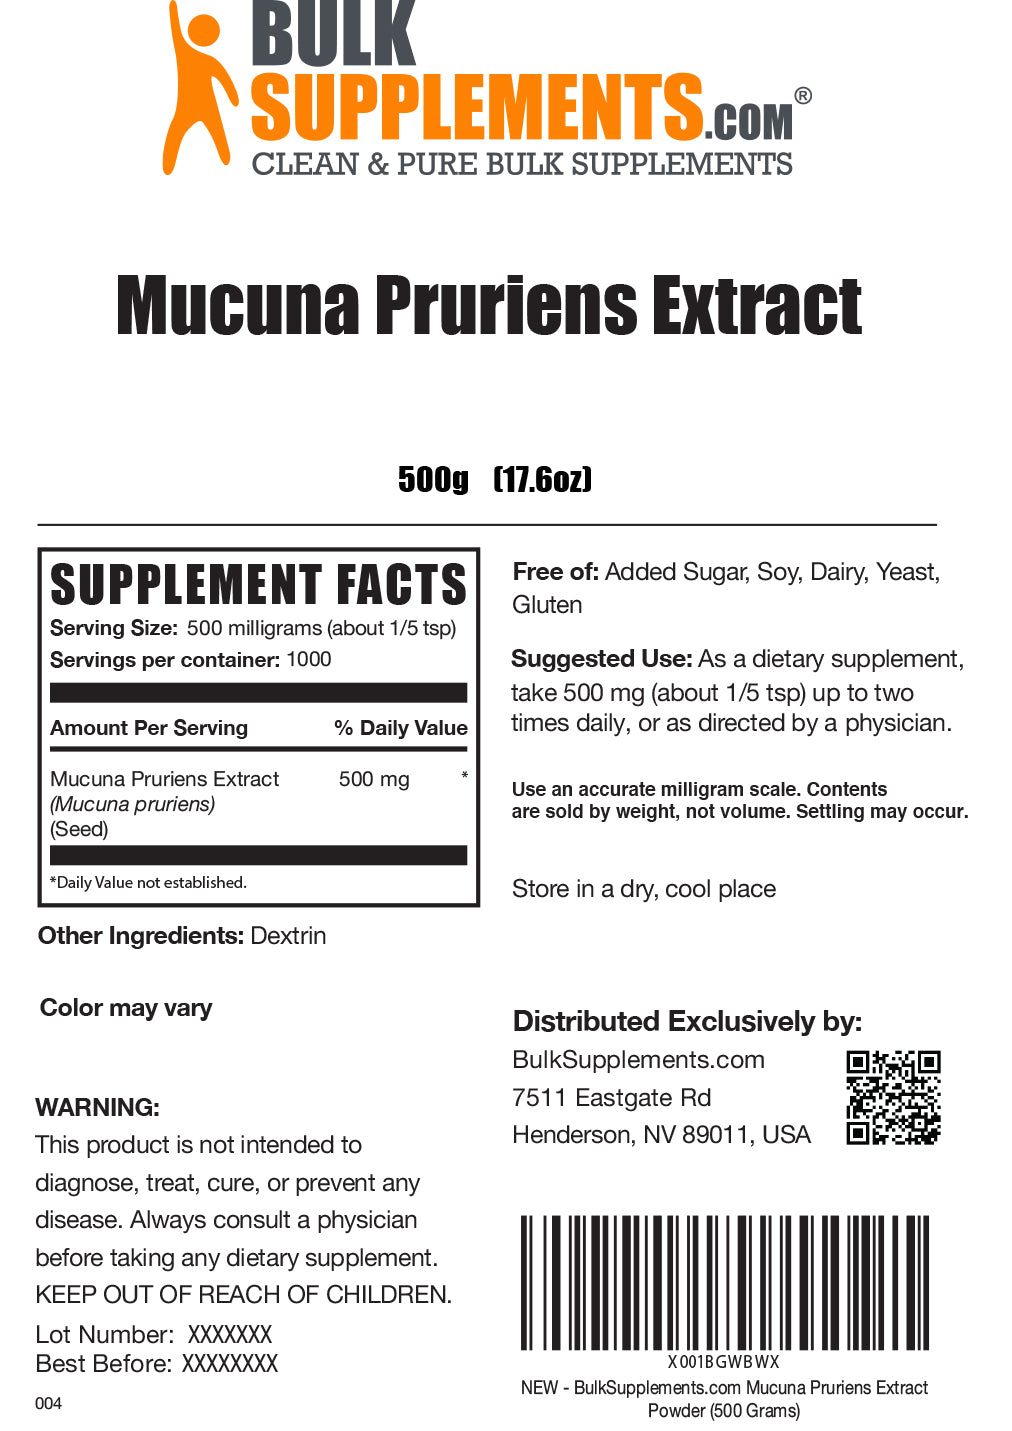 Mucuna Pruriens Extract Powder 500g Label